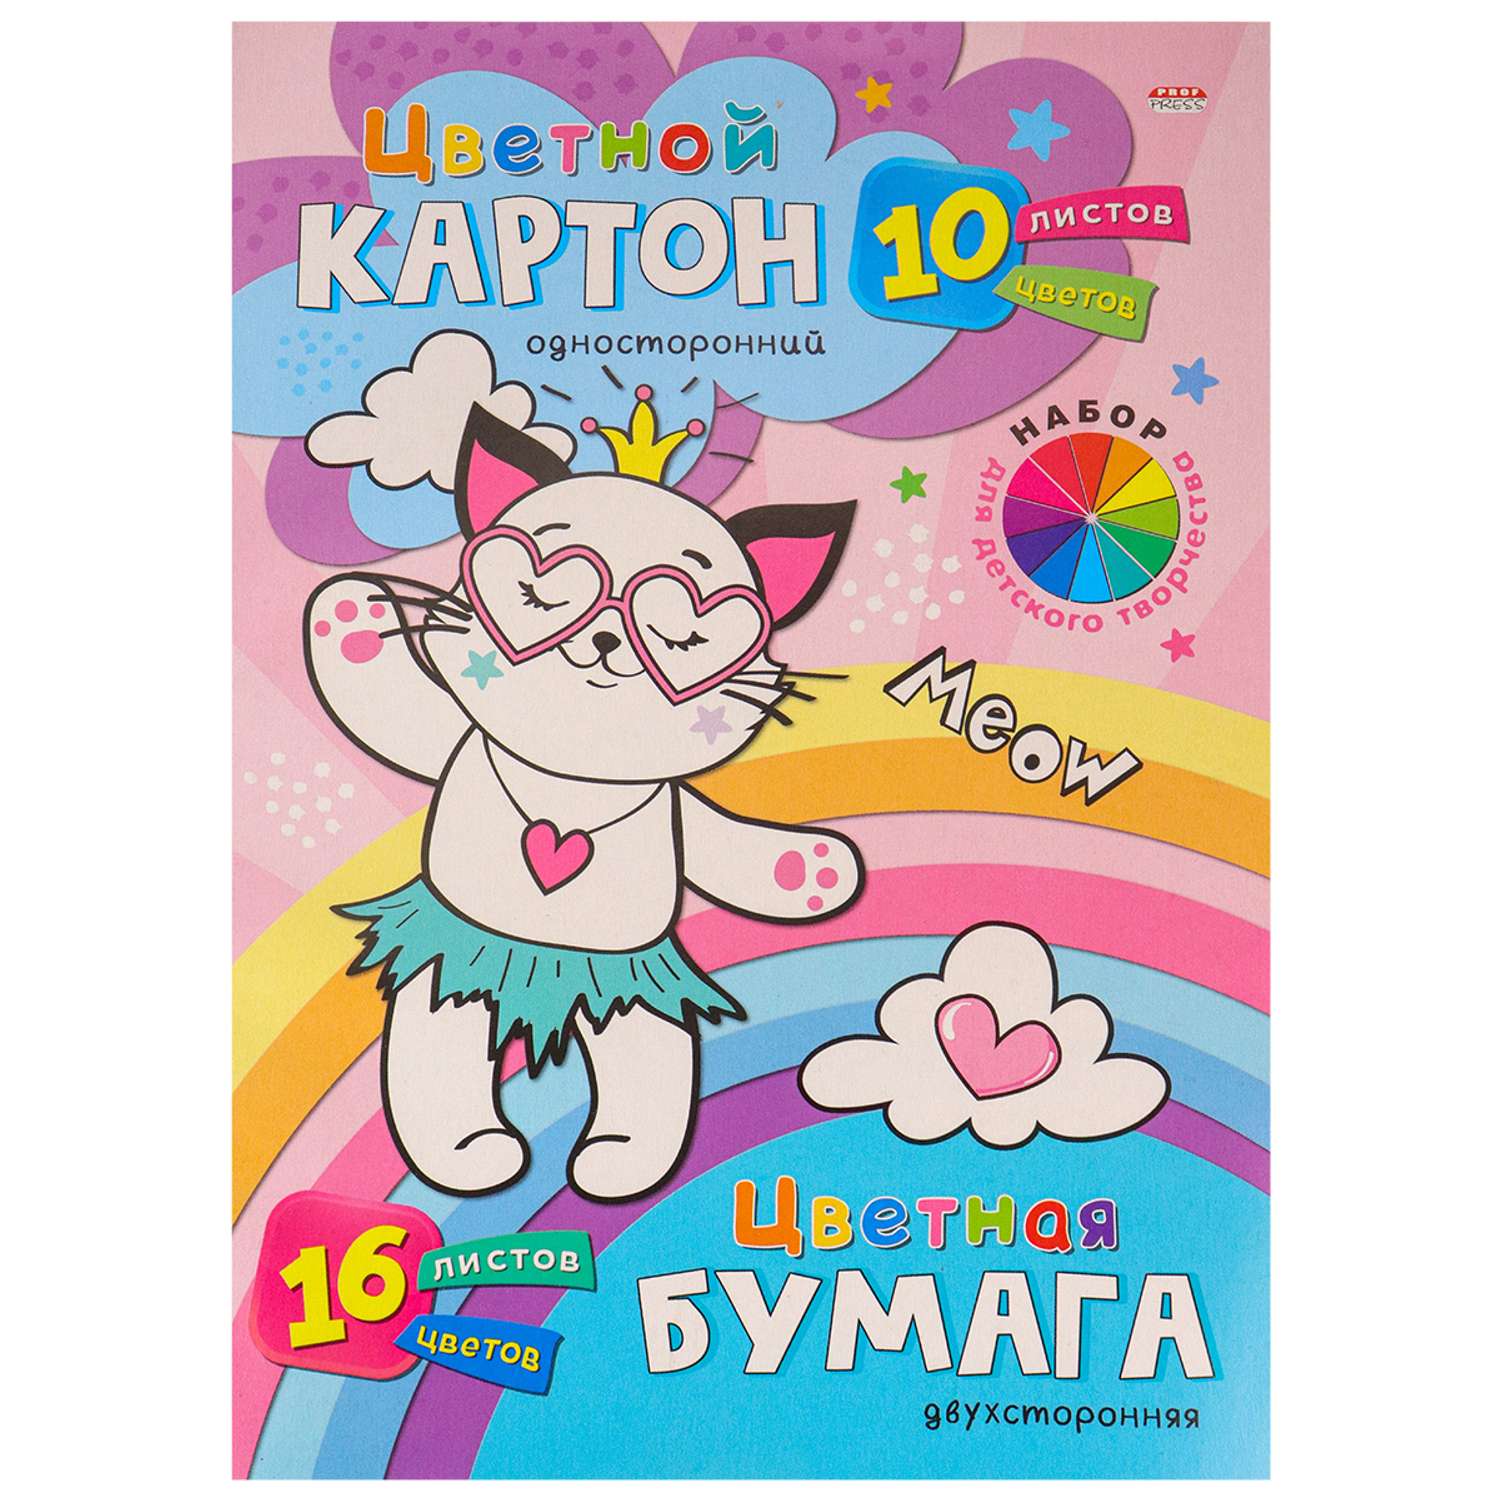 Набор для детского творчества Prof-Press Счастливый котик А4 цветной картон 10 листов бумага 16 листов - фото 1